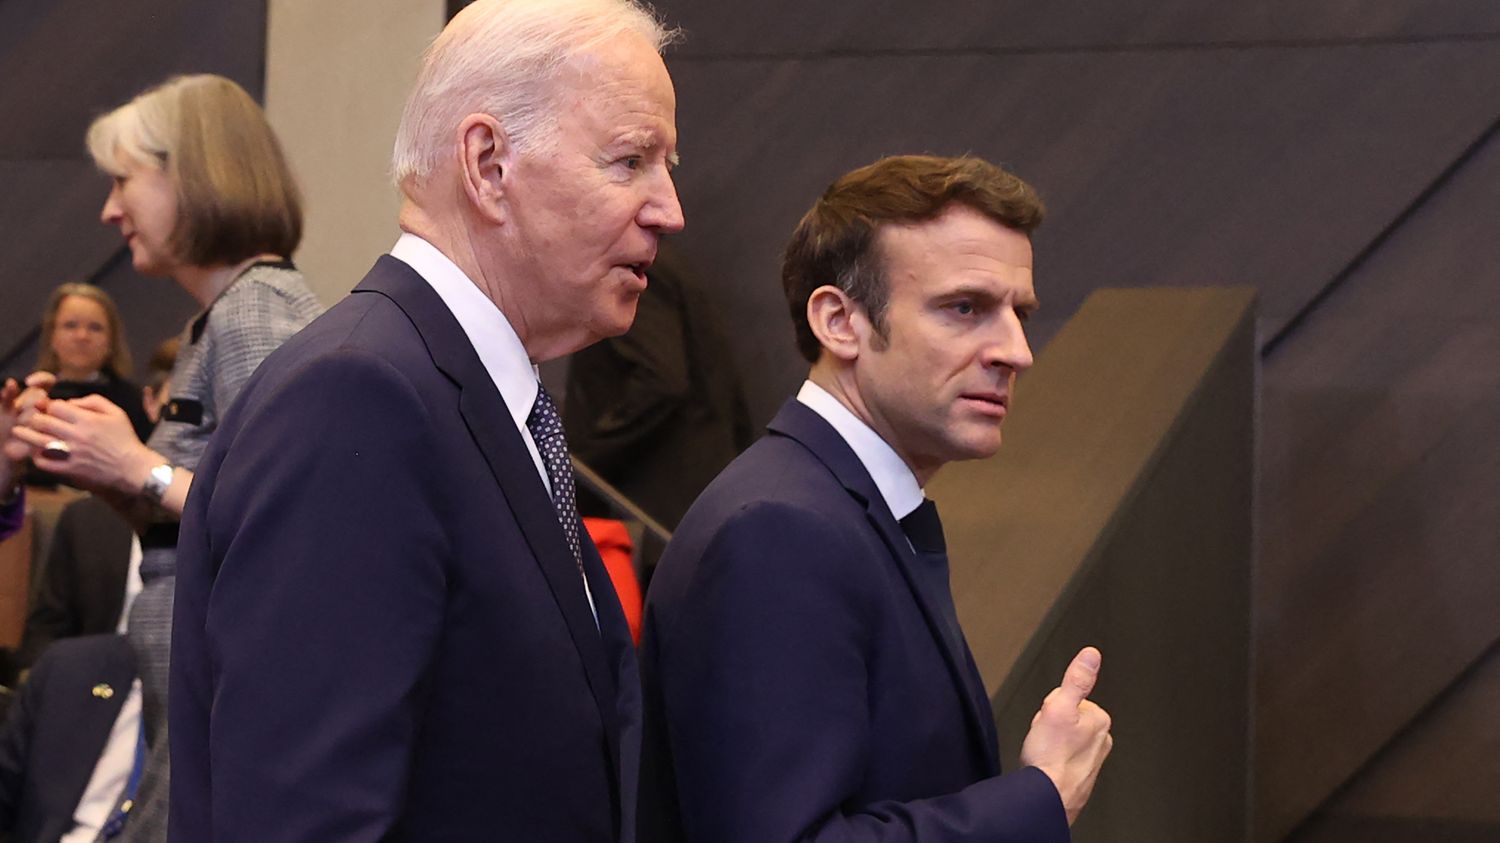 Joe Biden recevra Emmanuel Macron à la Maison Blanche pour une visite d'Etat le 1er décembre - franceinfo